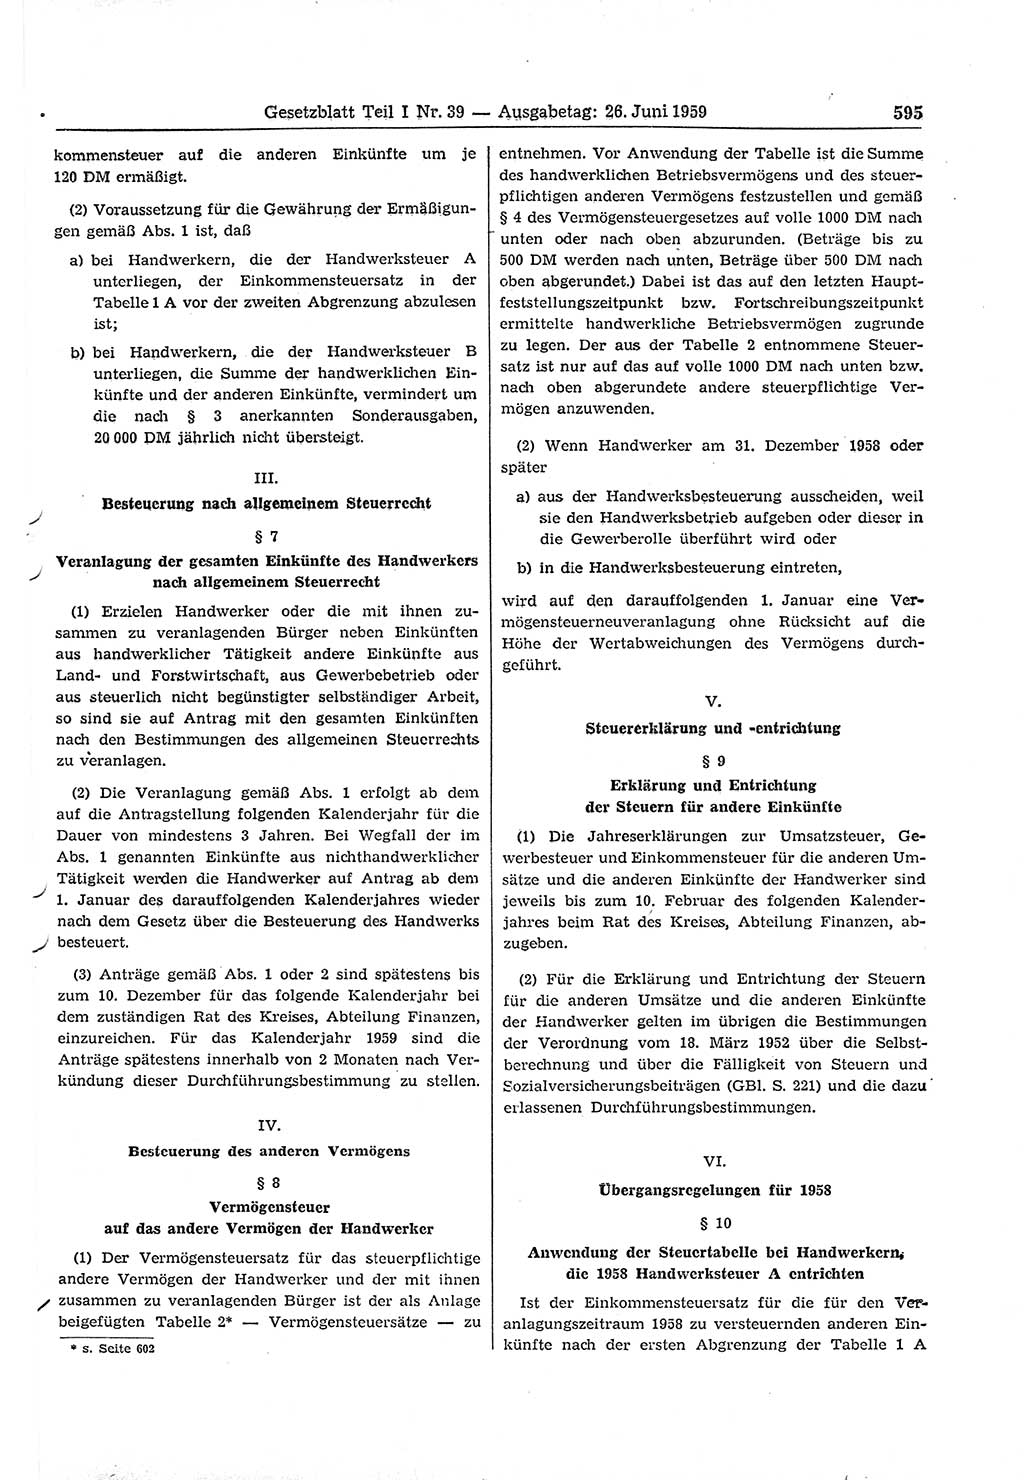 Gesetzblatt (GBl.) der Deutschen Demokratischen Republik (DDR) Teil Ⅰ 1959, Seite 595 (GBl. DDR Ⅰ 1959, S. 595)